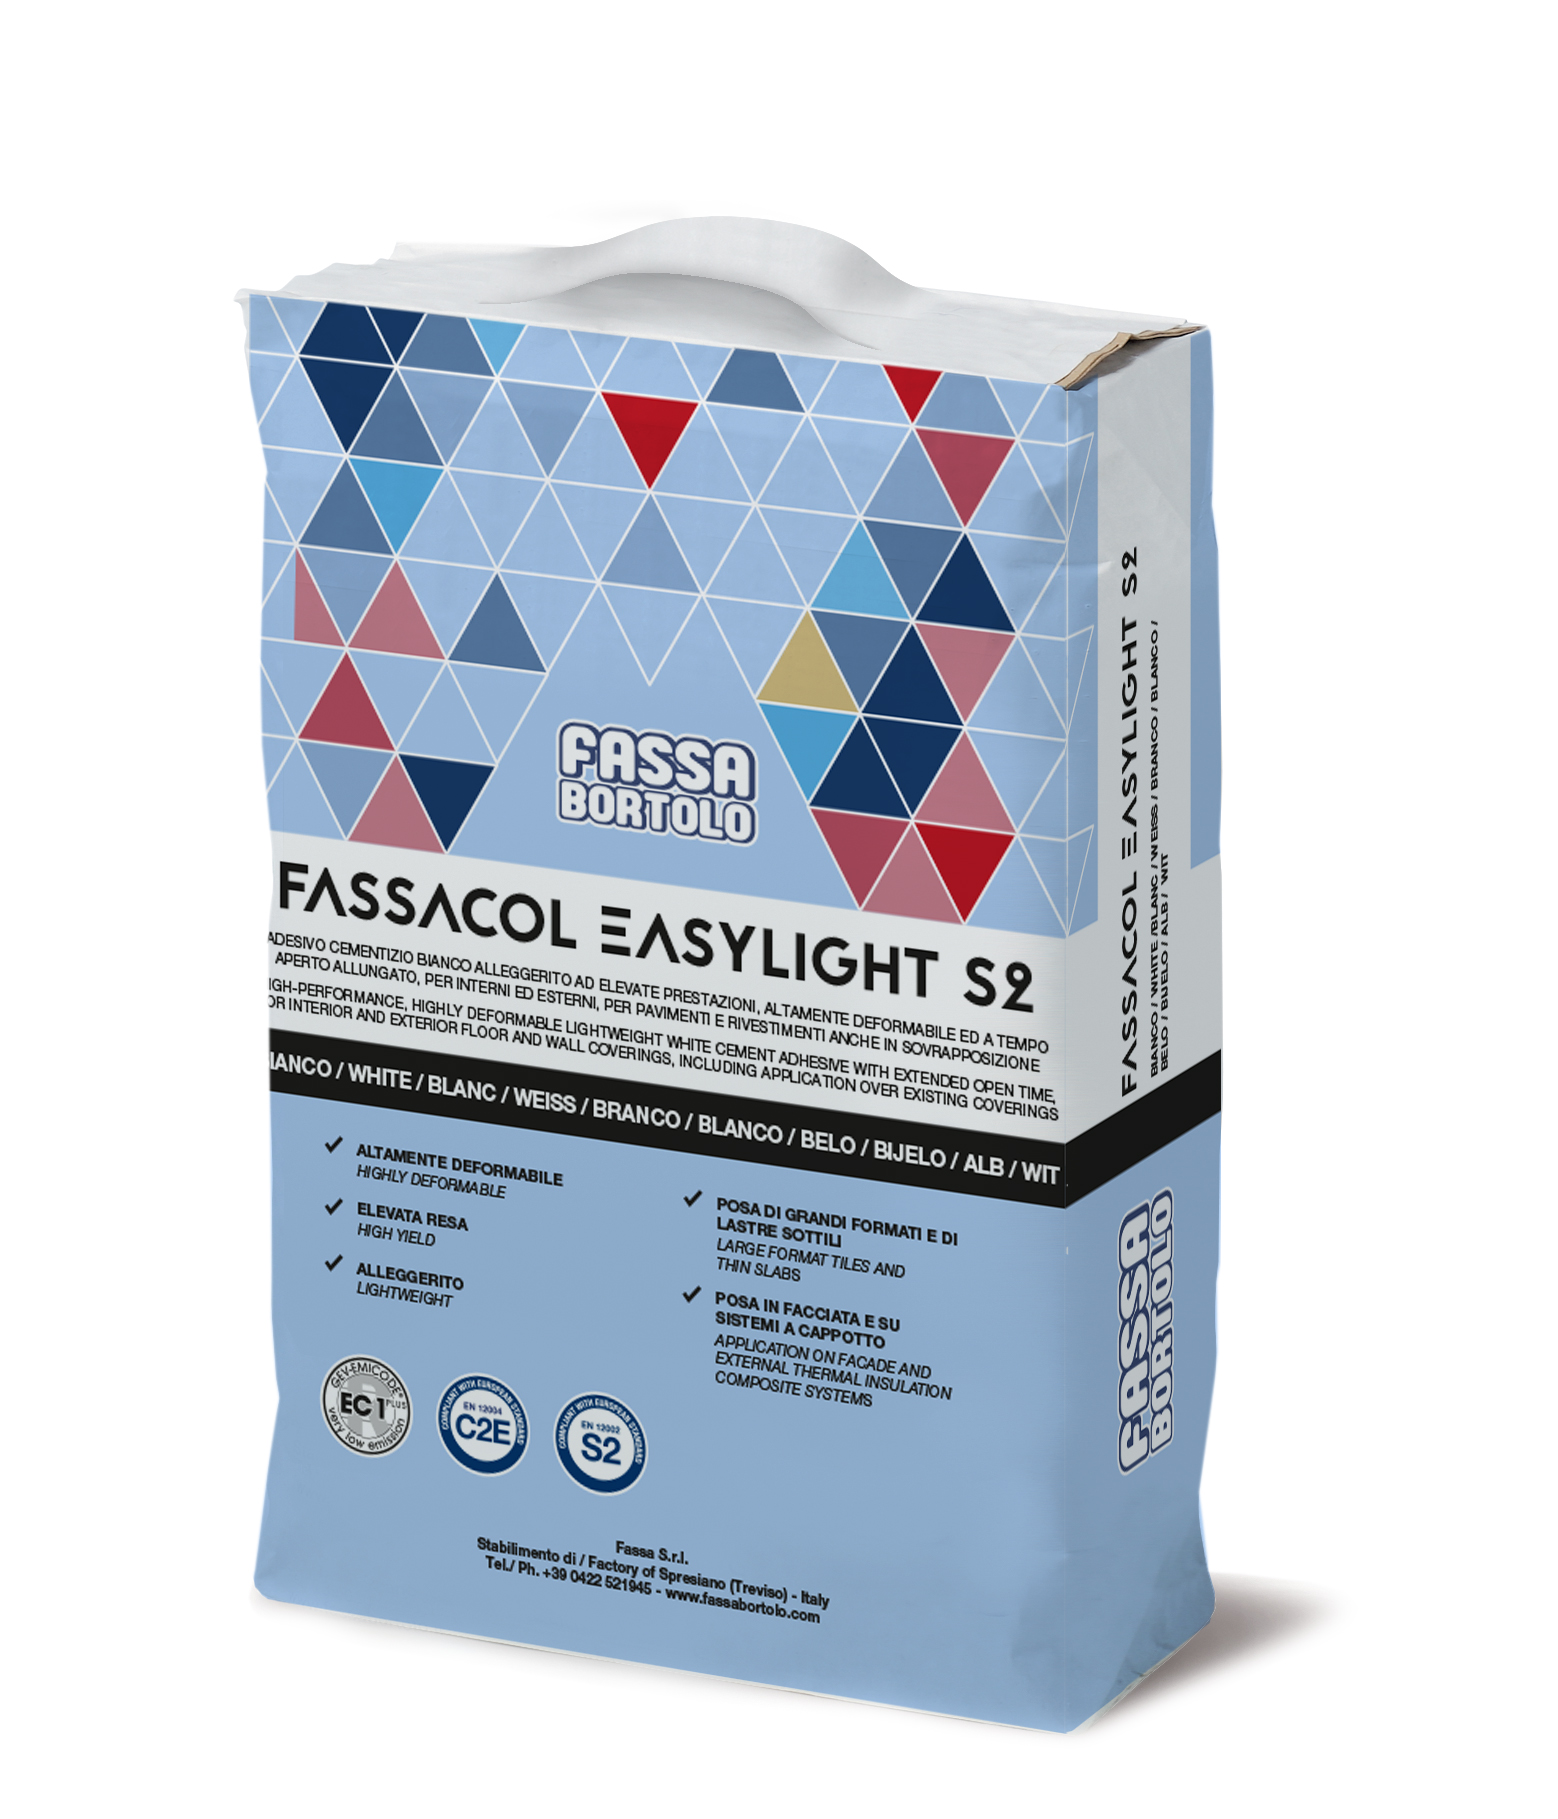 FASSACOL EASYLIGHT S2: Adhesivo cementoso aligerado monocomponente de muy alta elasticidad, blanco y gris, para pavimentos y revestimientos exteriores e interiores